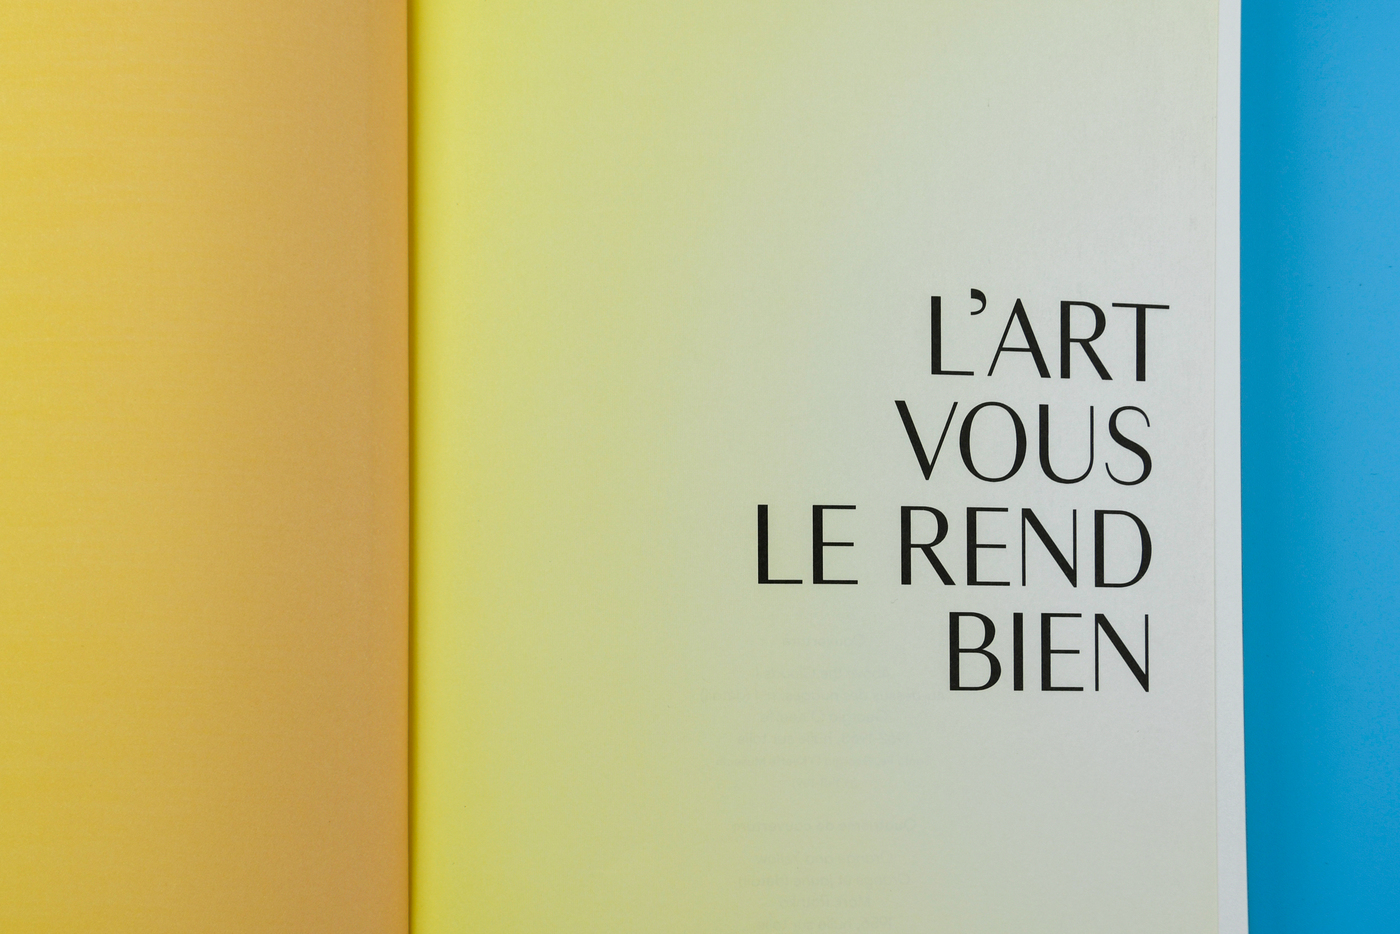 L’art vous le rend bien by Laurent Gounelle - Fonts In Use